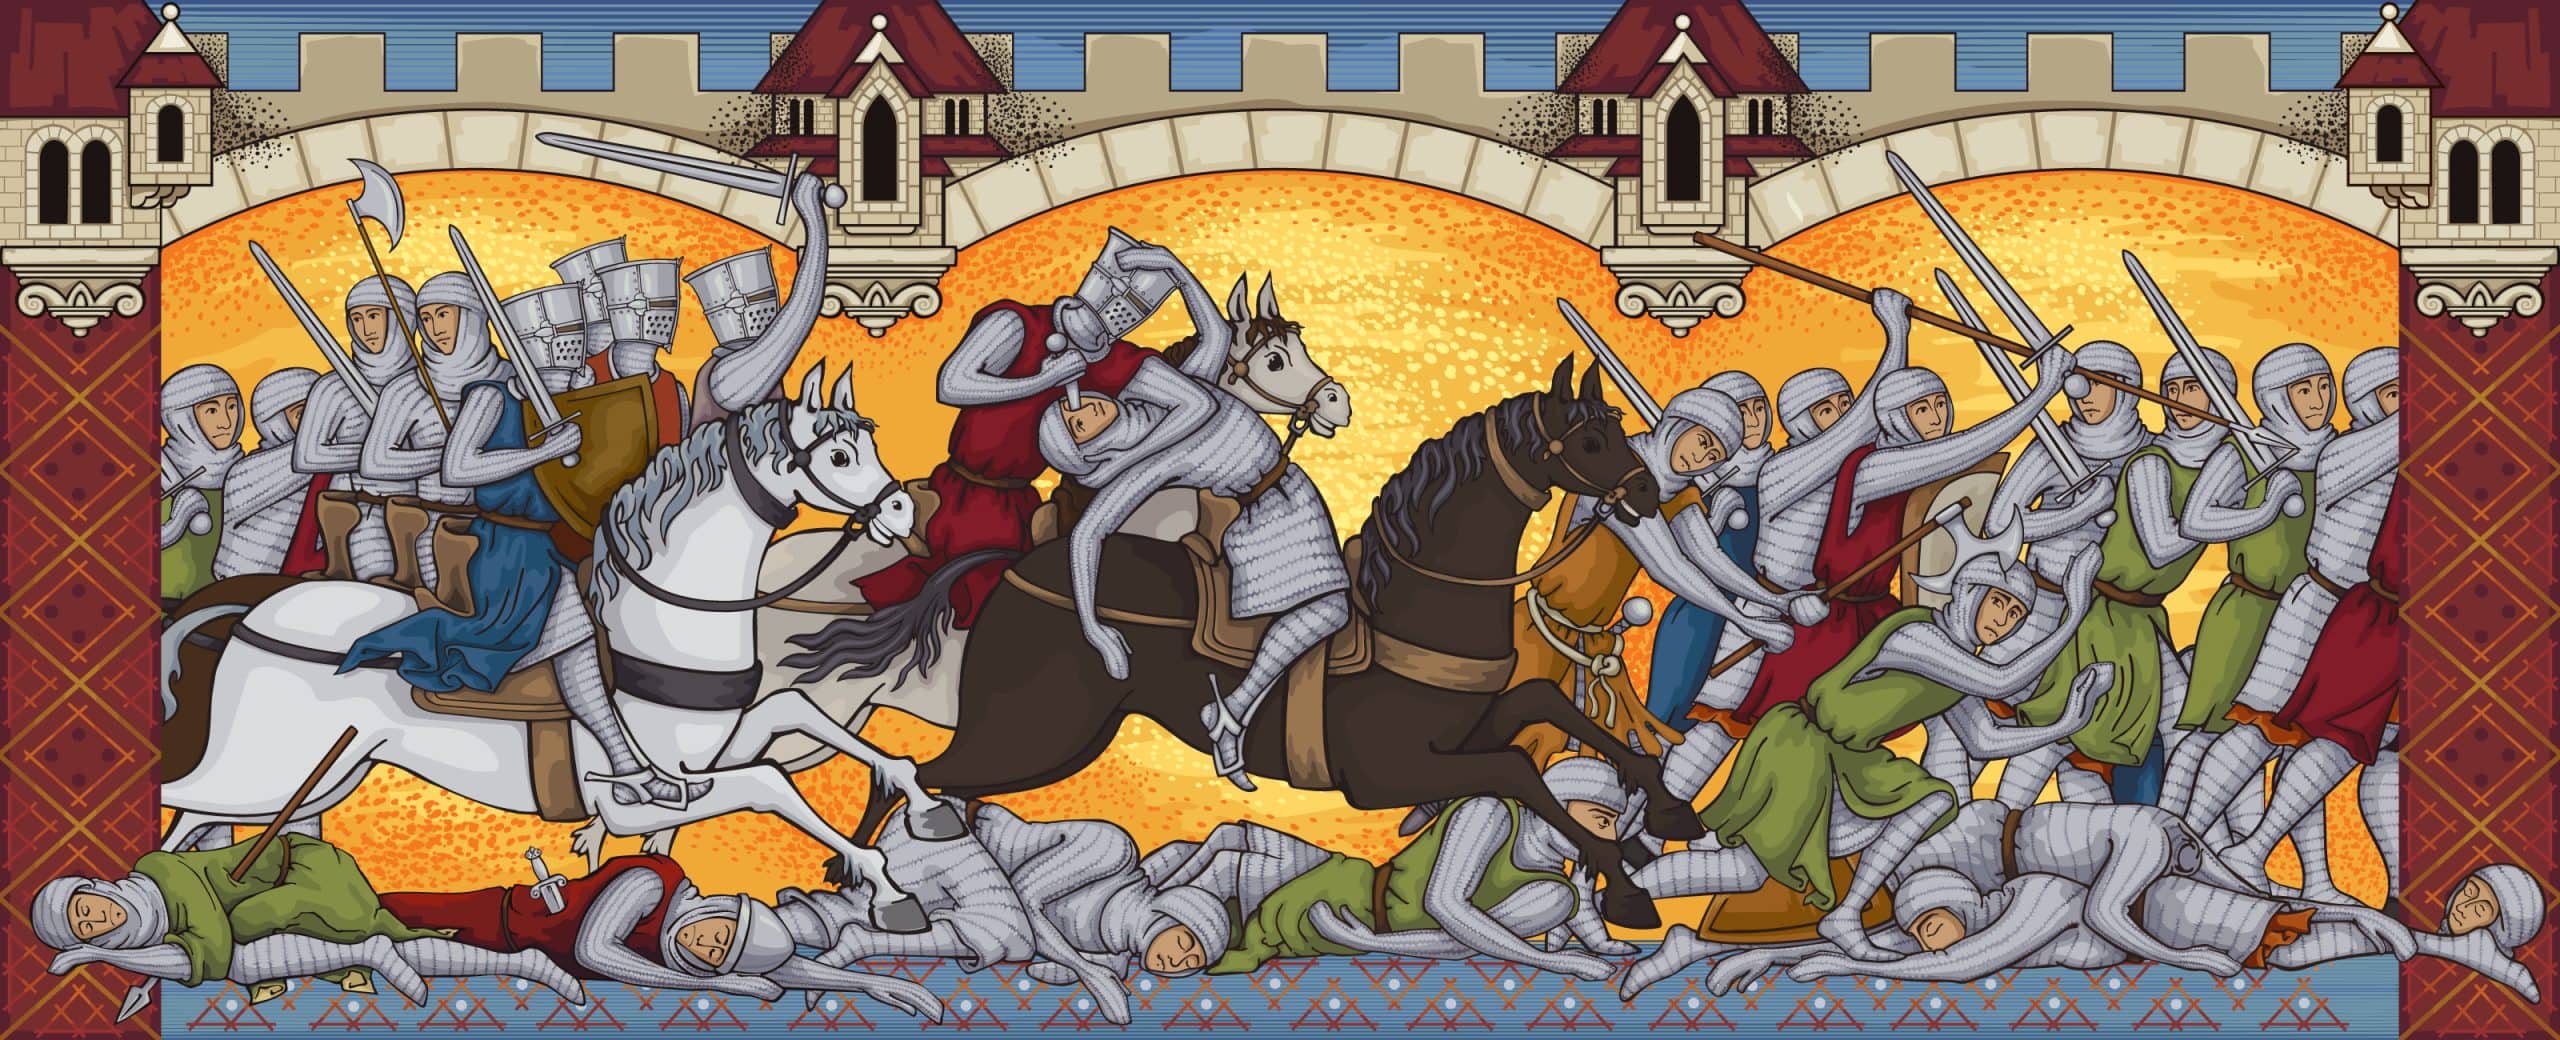 Mittelalterliche Schlacht